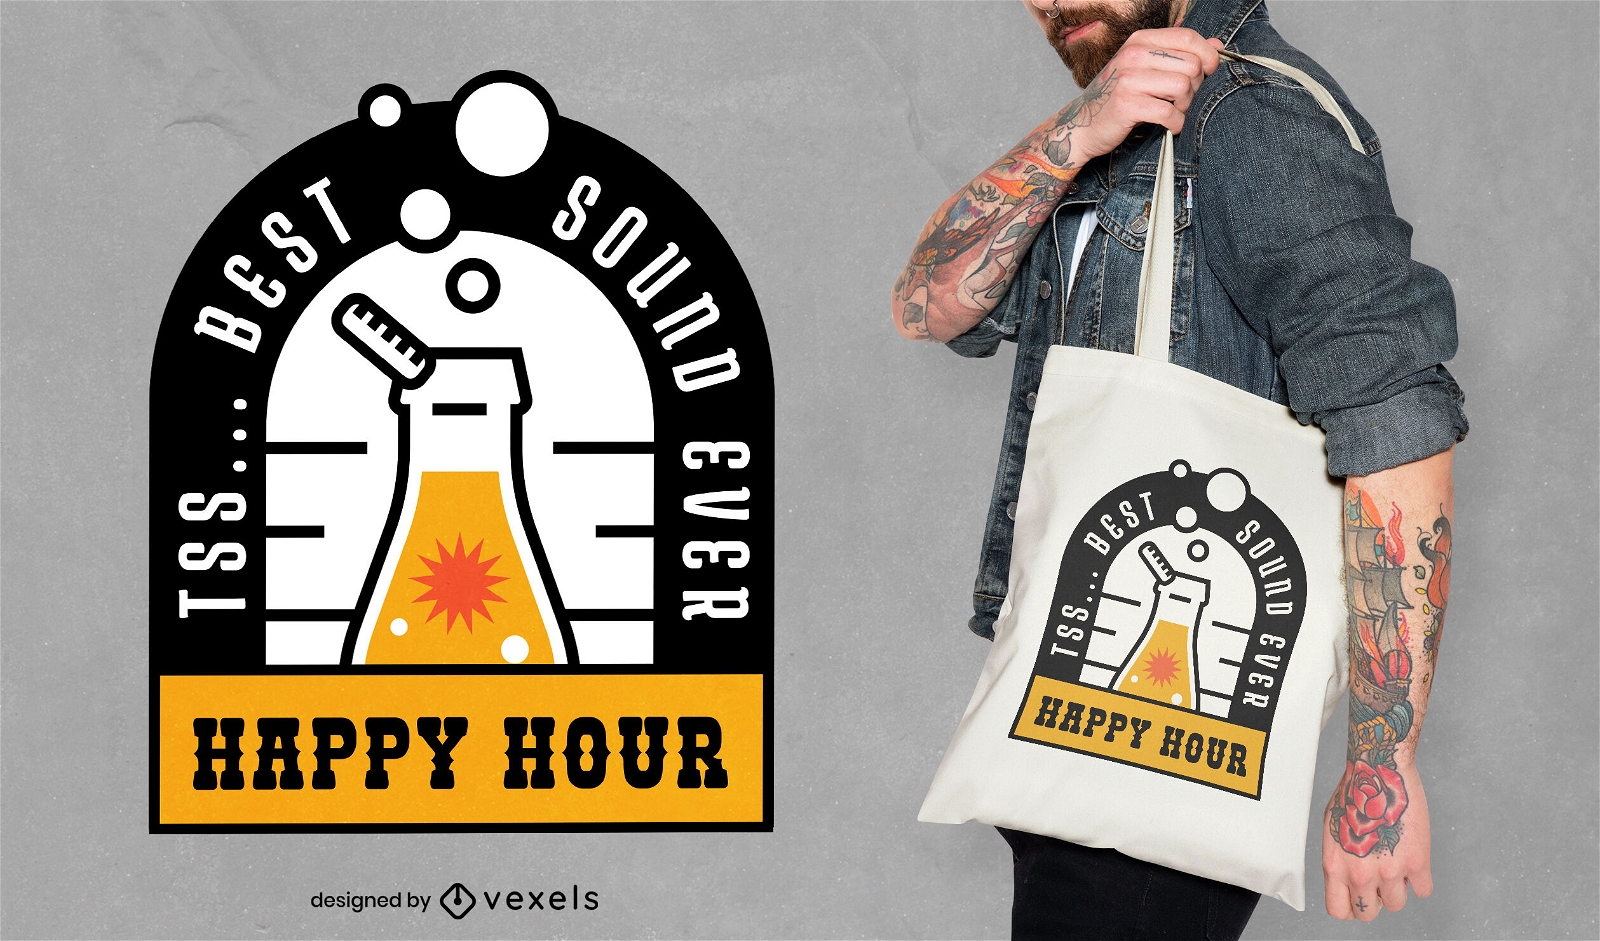 Happy hour beer t-shirt design